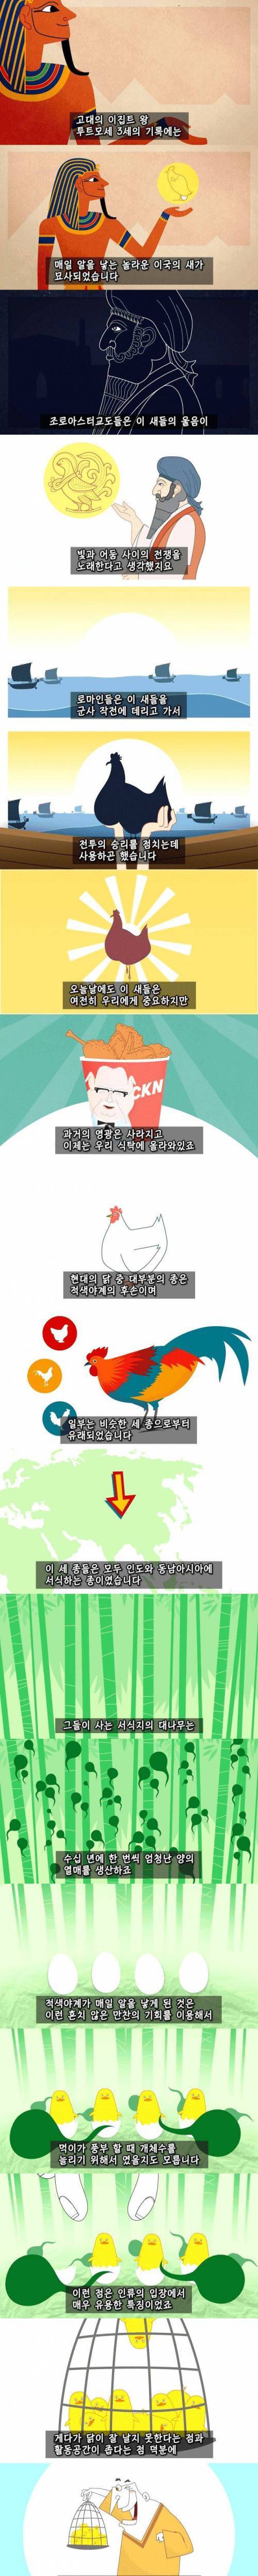 치킨의 역사.jpg